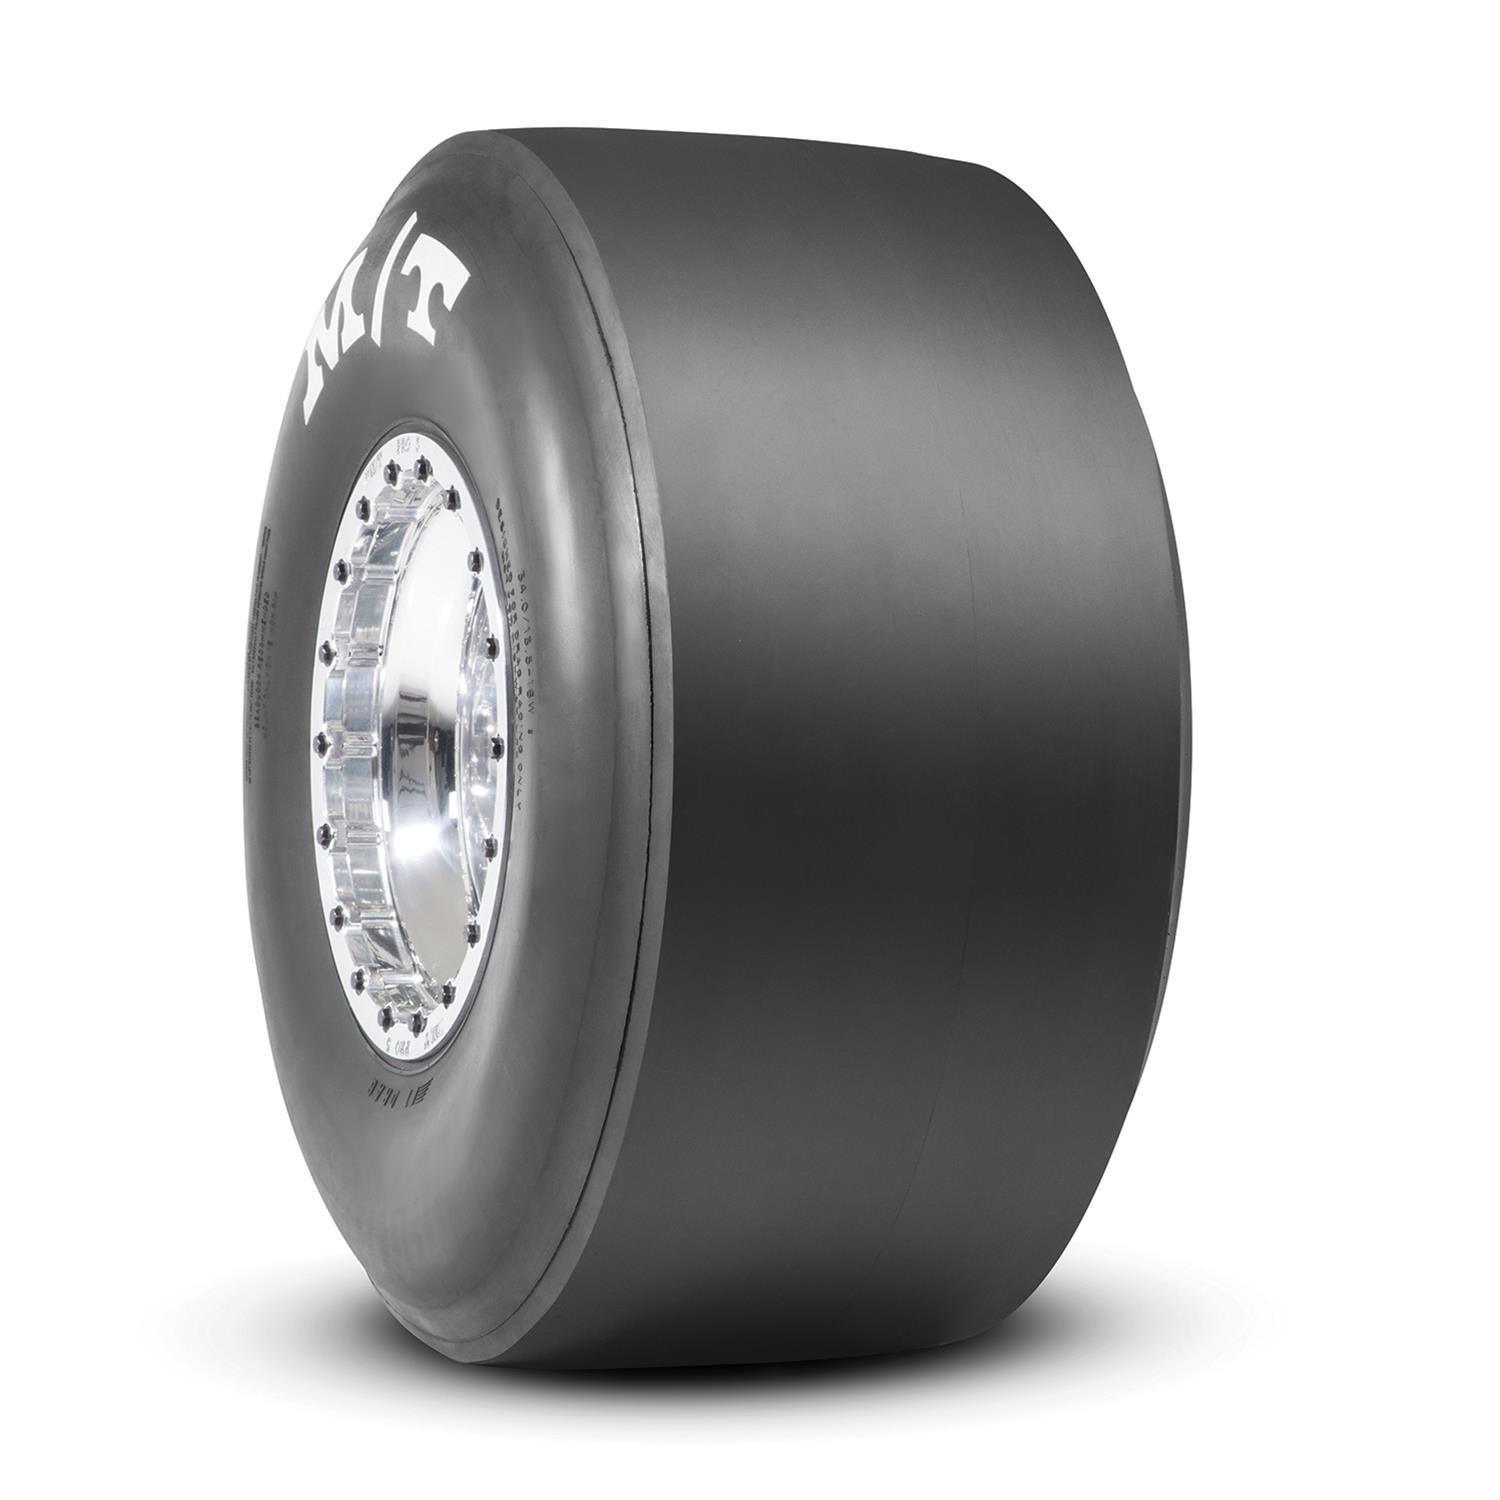 31.0/13.0-15 ET Drag Tire - Burlile Performance Products